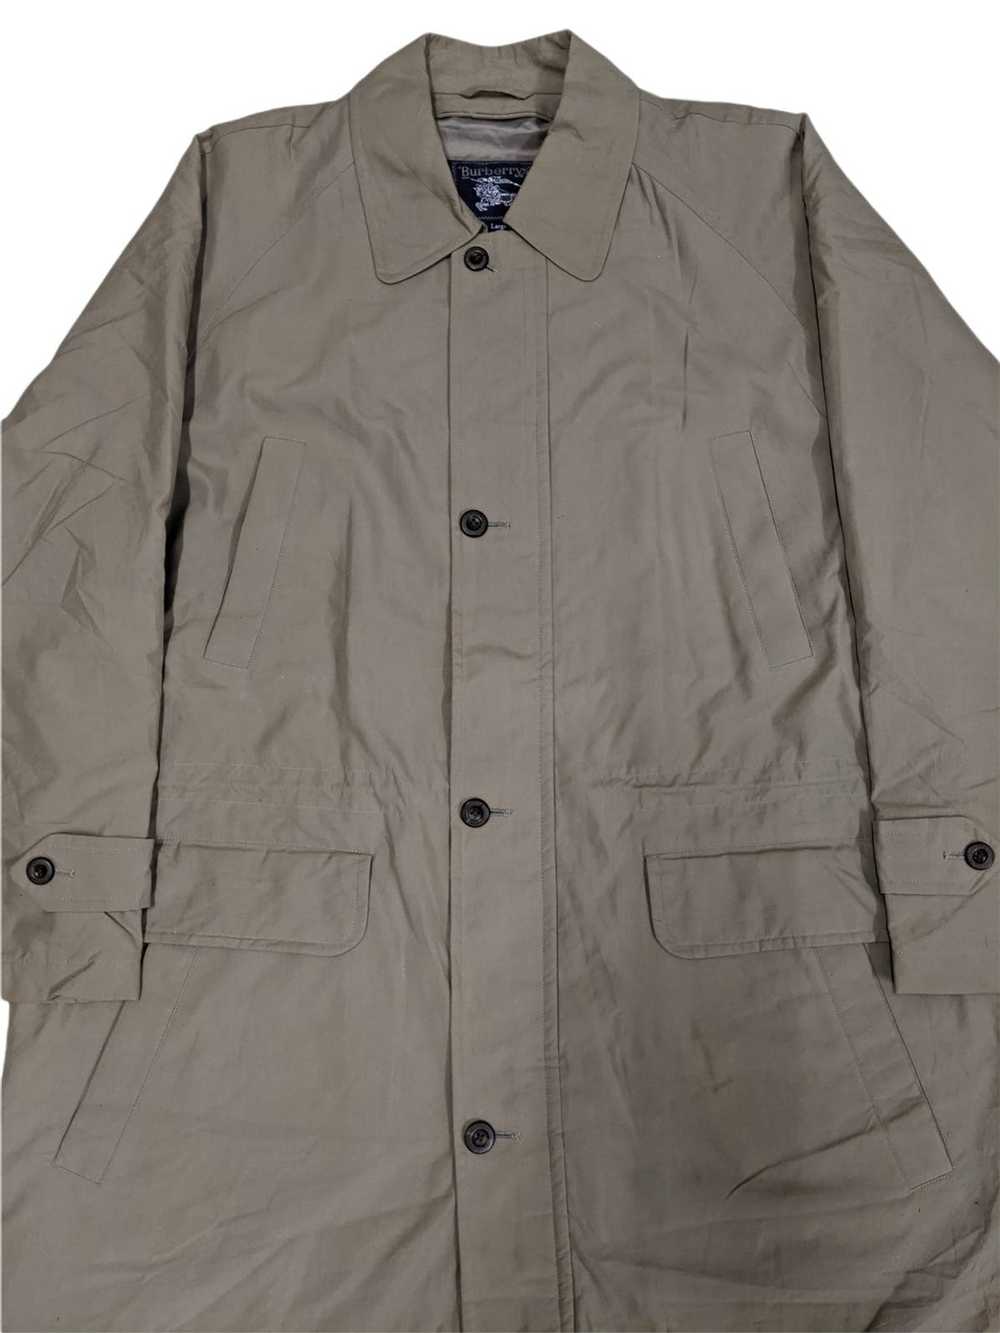 Burberry × Vintage Vtg Burberry Overcoat Jacket - image 2